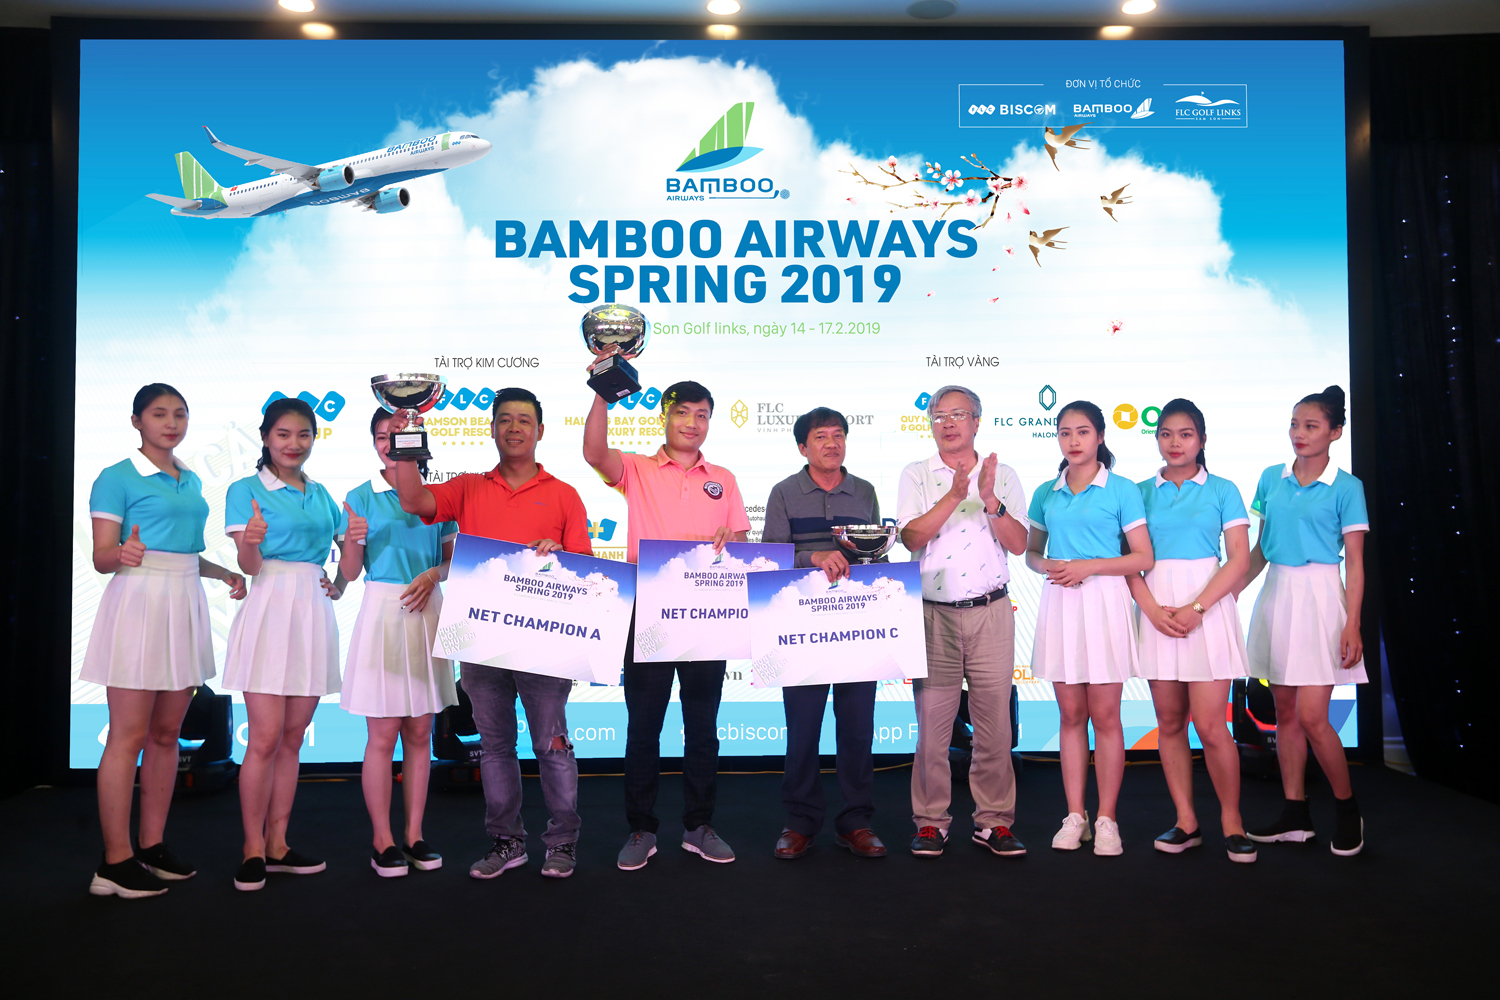 Bamboo Airways Spring 2019: Ghi 3 điểm Birdie, golfer Nguyễn Đức Ninh giành giải Nhất bảng A trong buổi thi đấu thứ 4